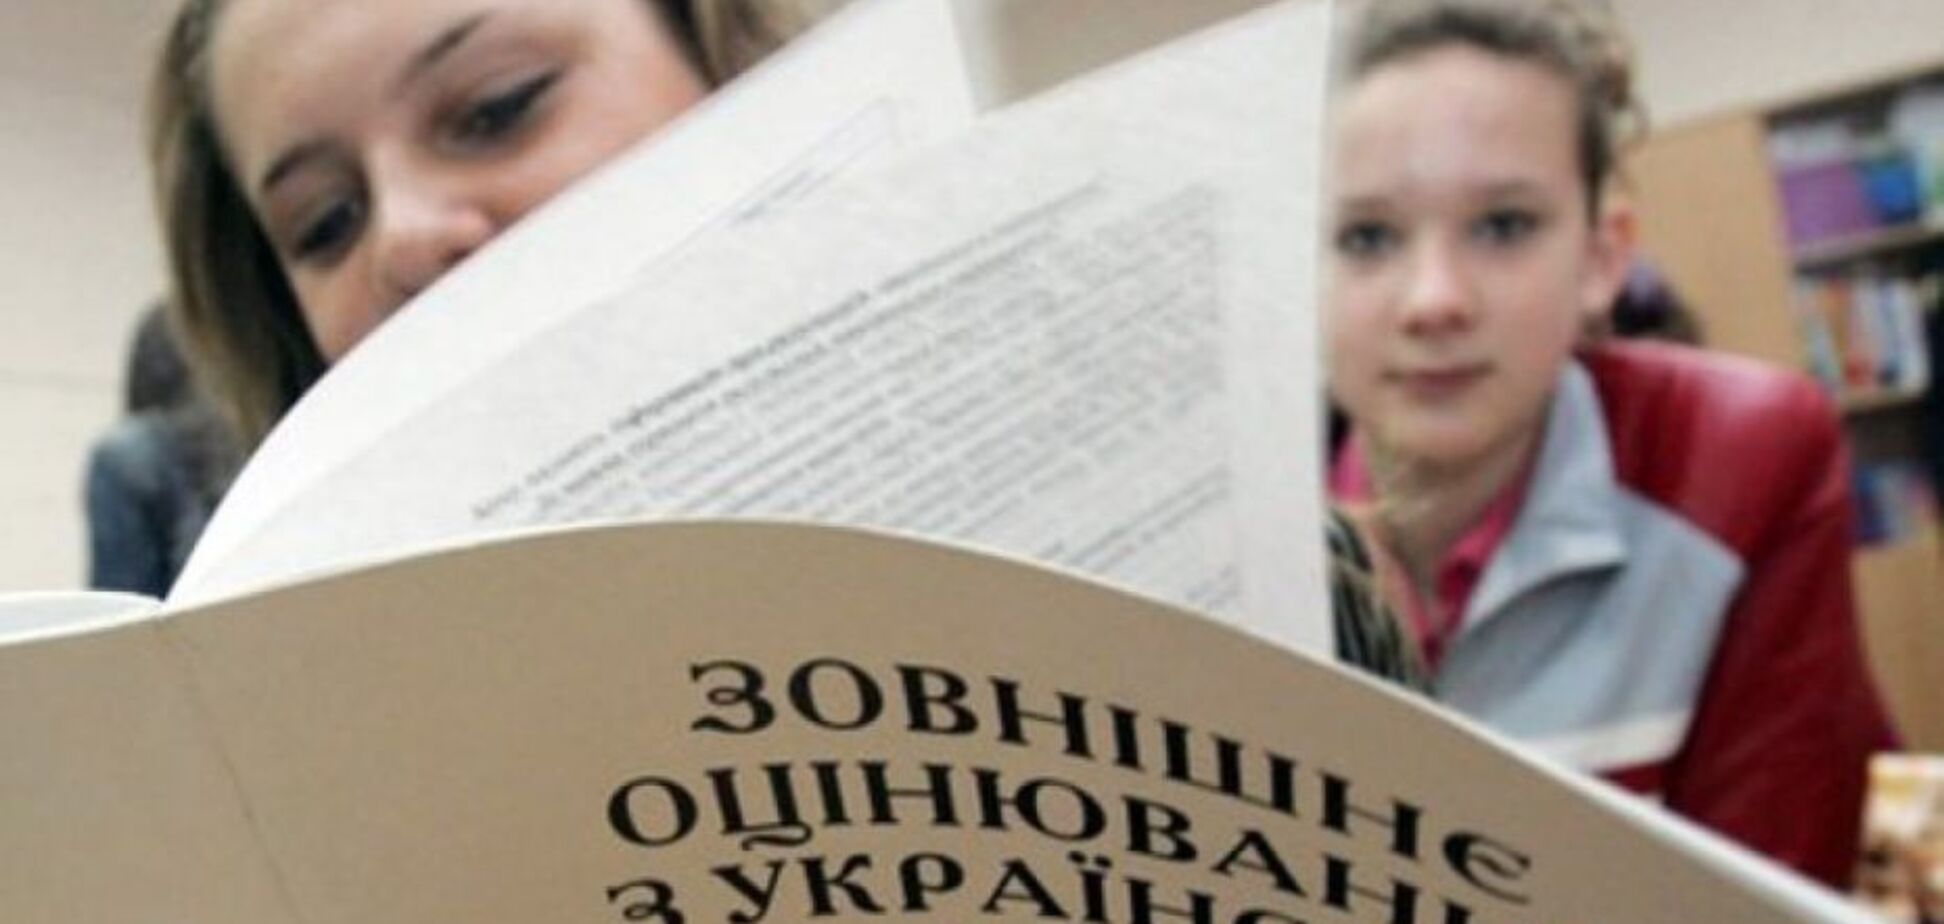 ВНО-2018: шестая часть школьников завалила украинский язык